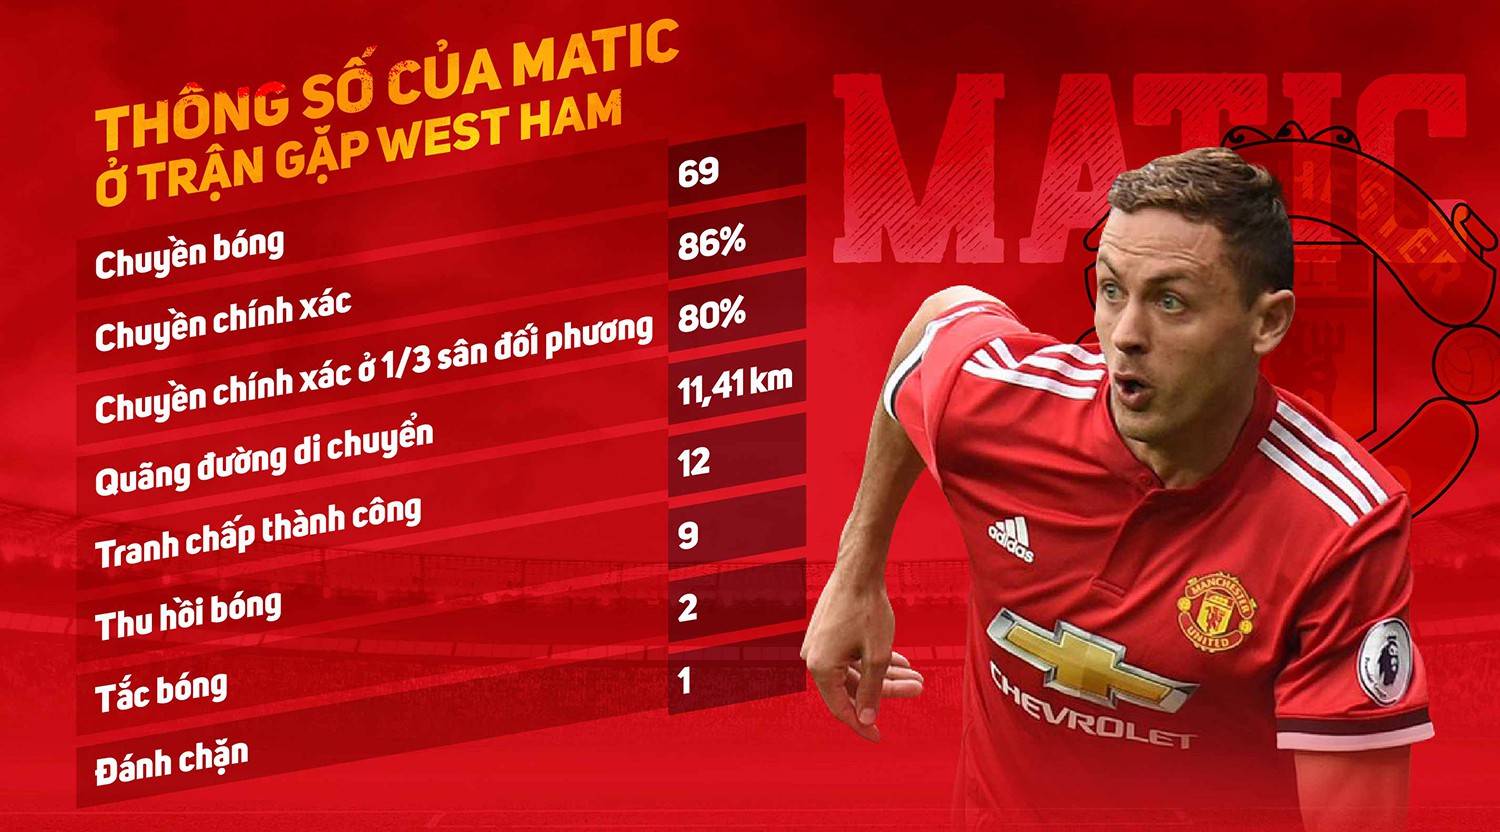 Thông số giúp Matic trở thành cầu thủ xuất sắc nhất trận Man Utd - West Ham